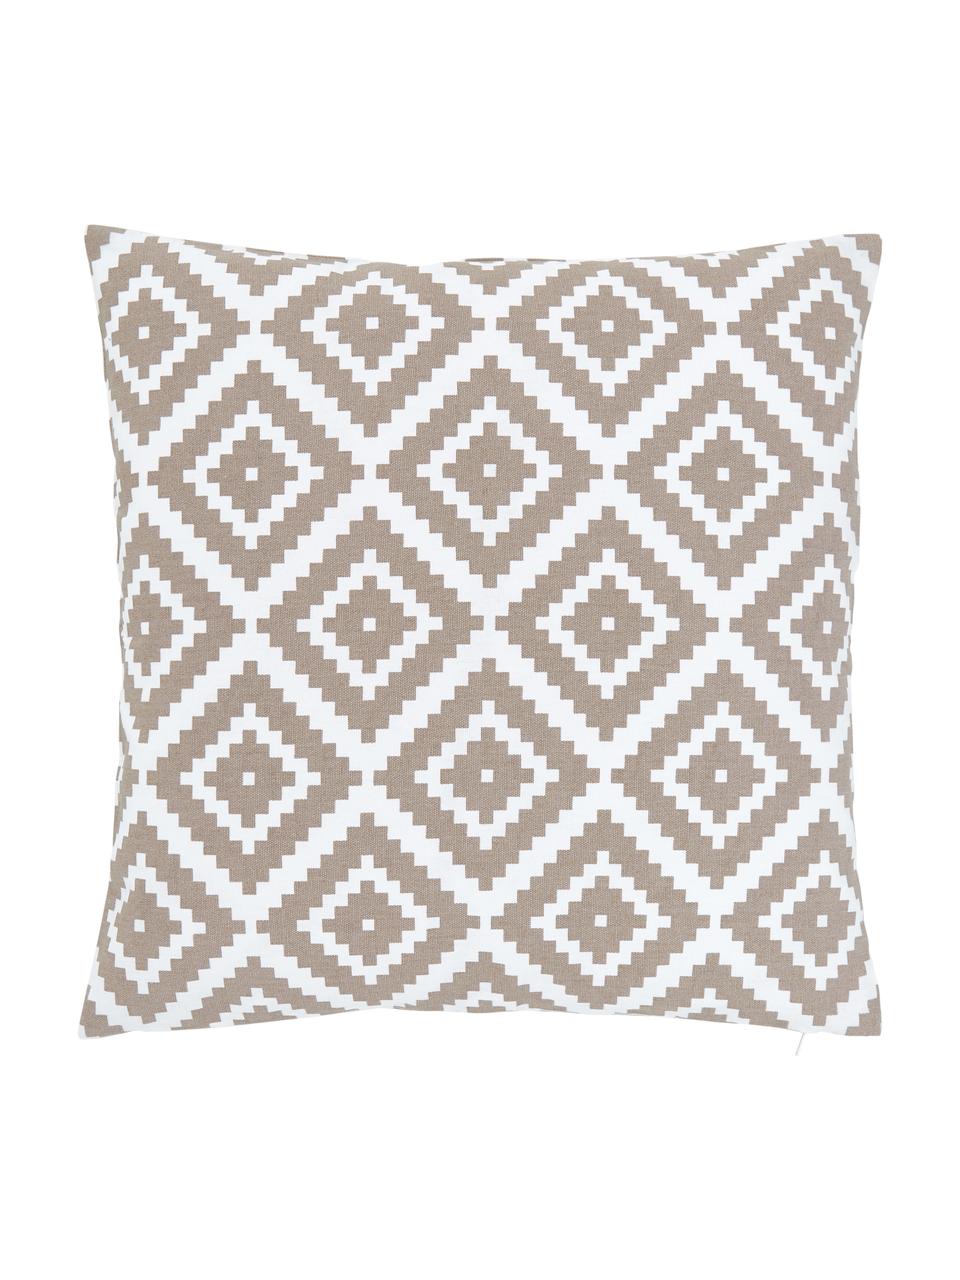 Kissenhülle Miami mit grafischem Muster, 100% Baumwolle, Taupe, Weiß, B 45 x L 45 cm